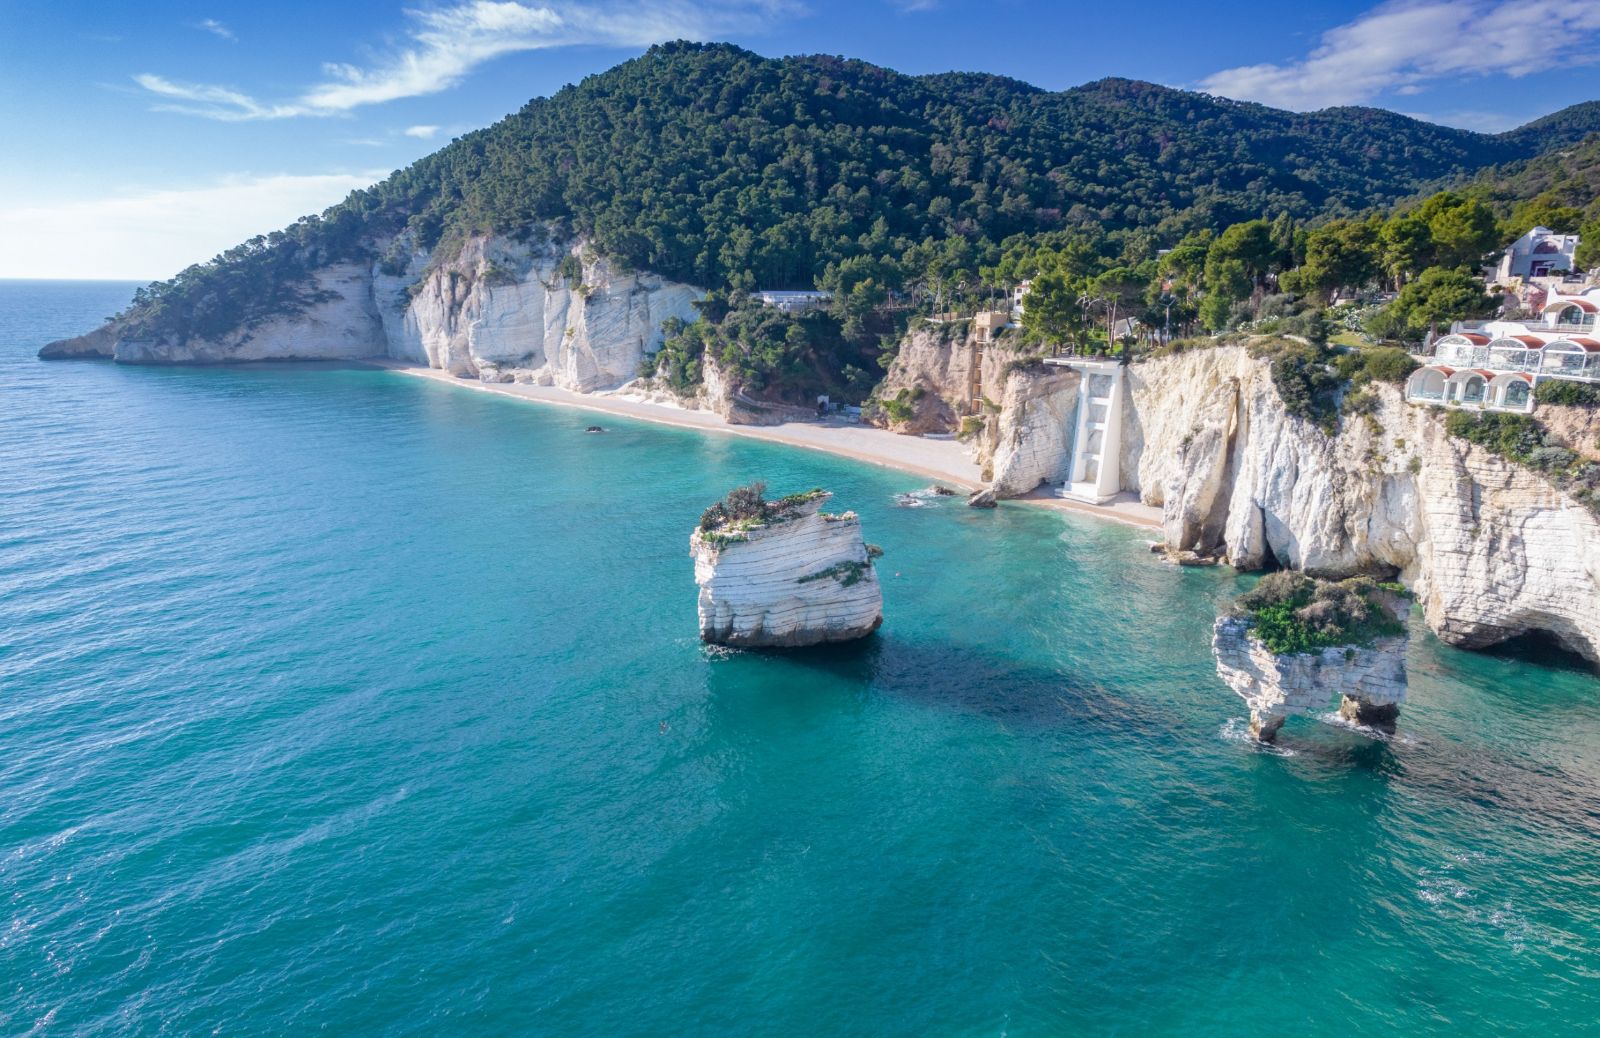 Spiagge bianche: le più belle d'Italia